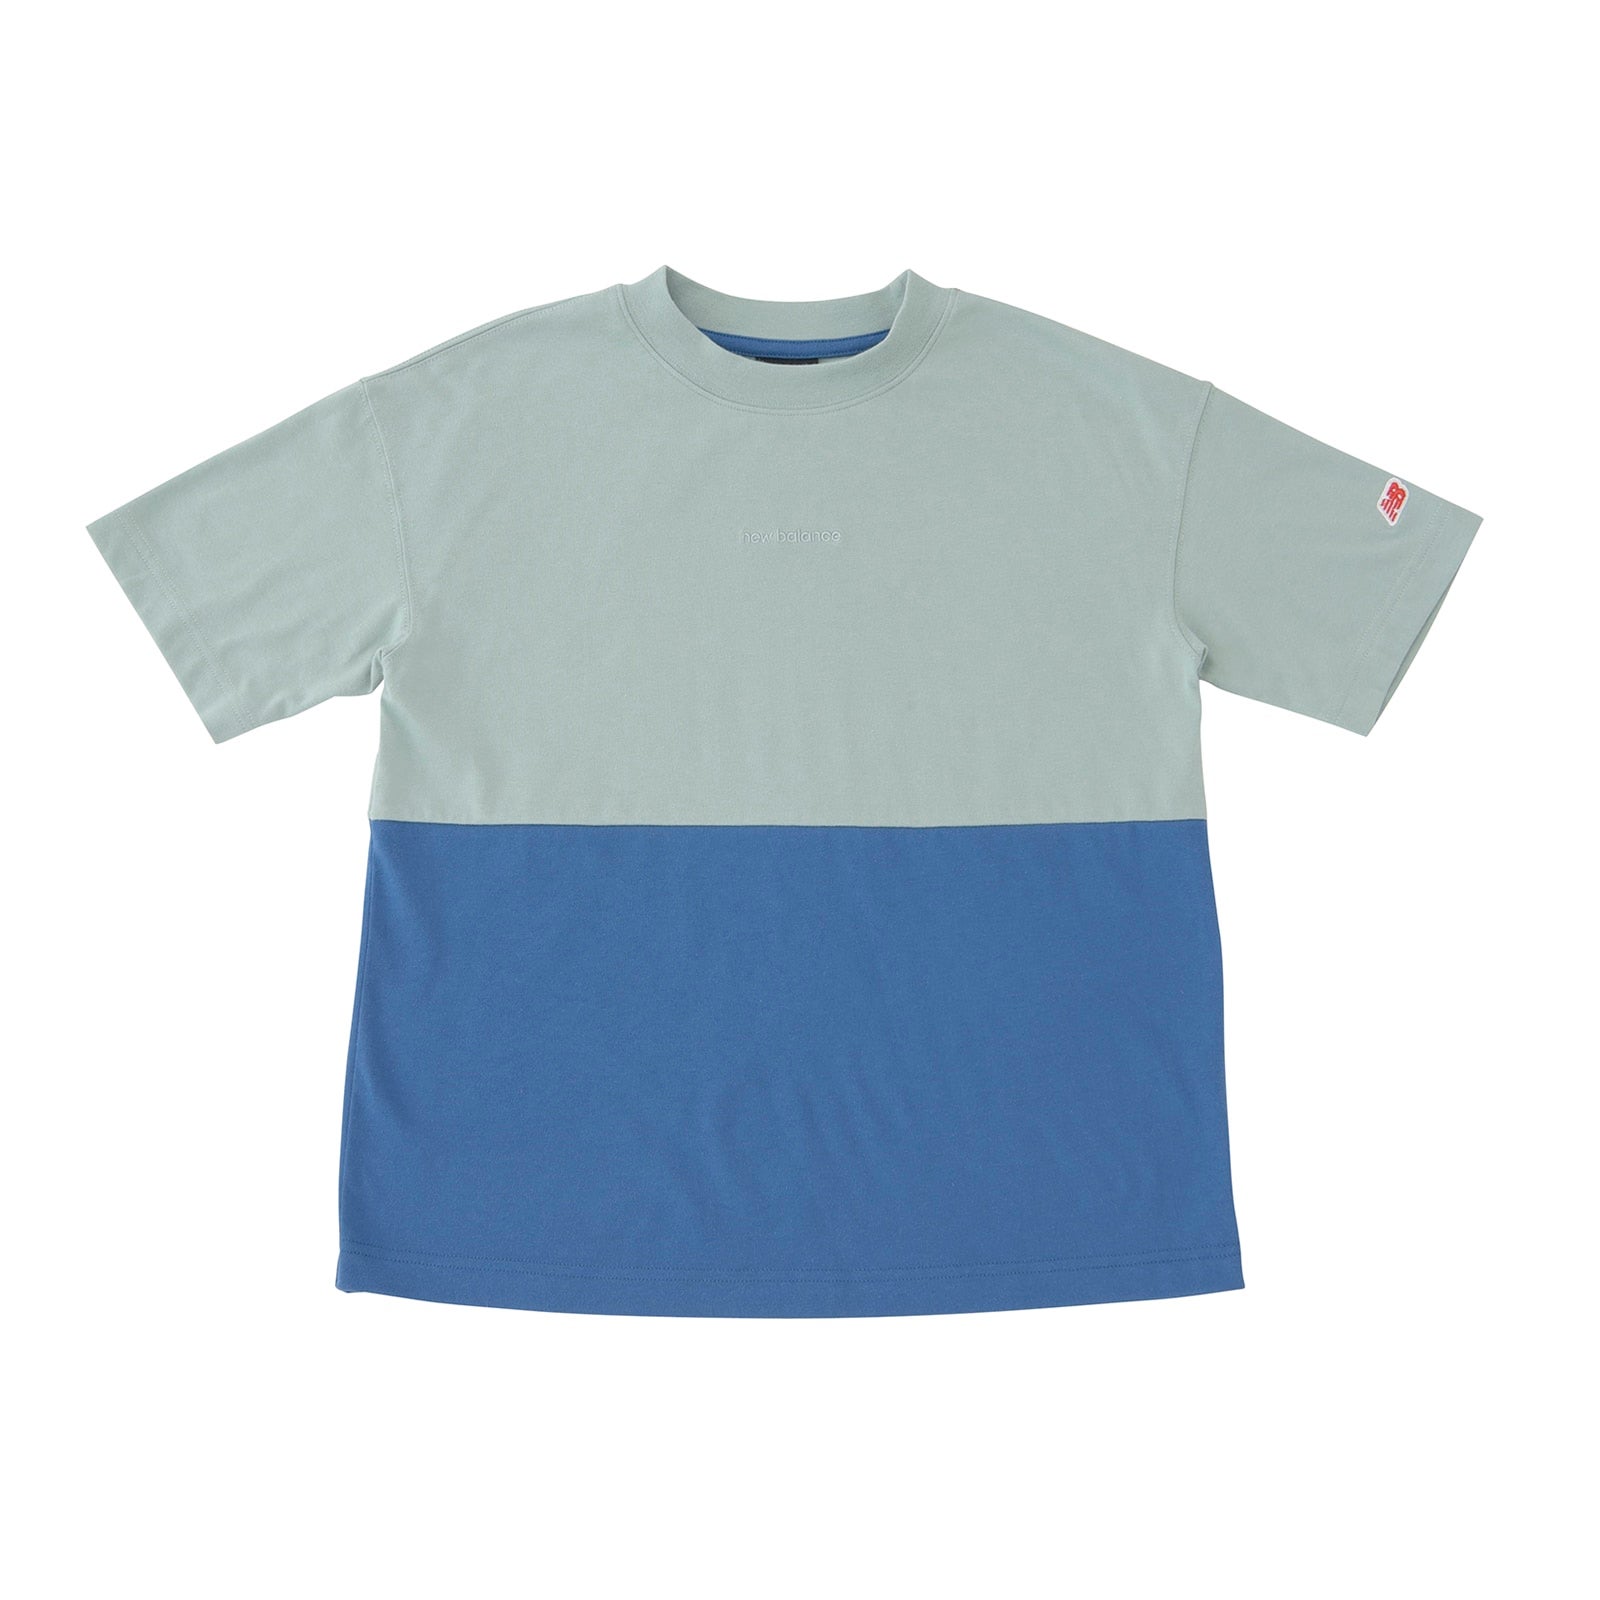 Moisture wicking Linear logo Block short sleeve T-shirt